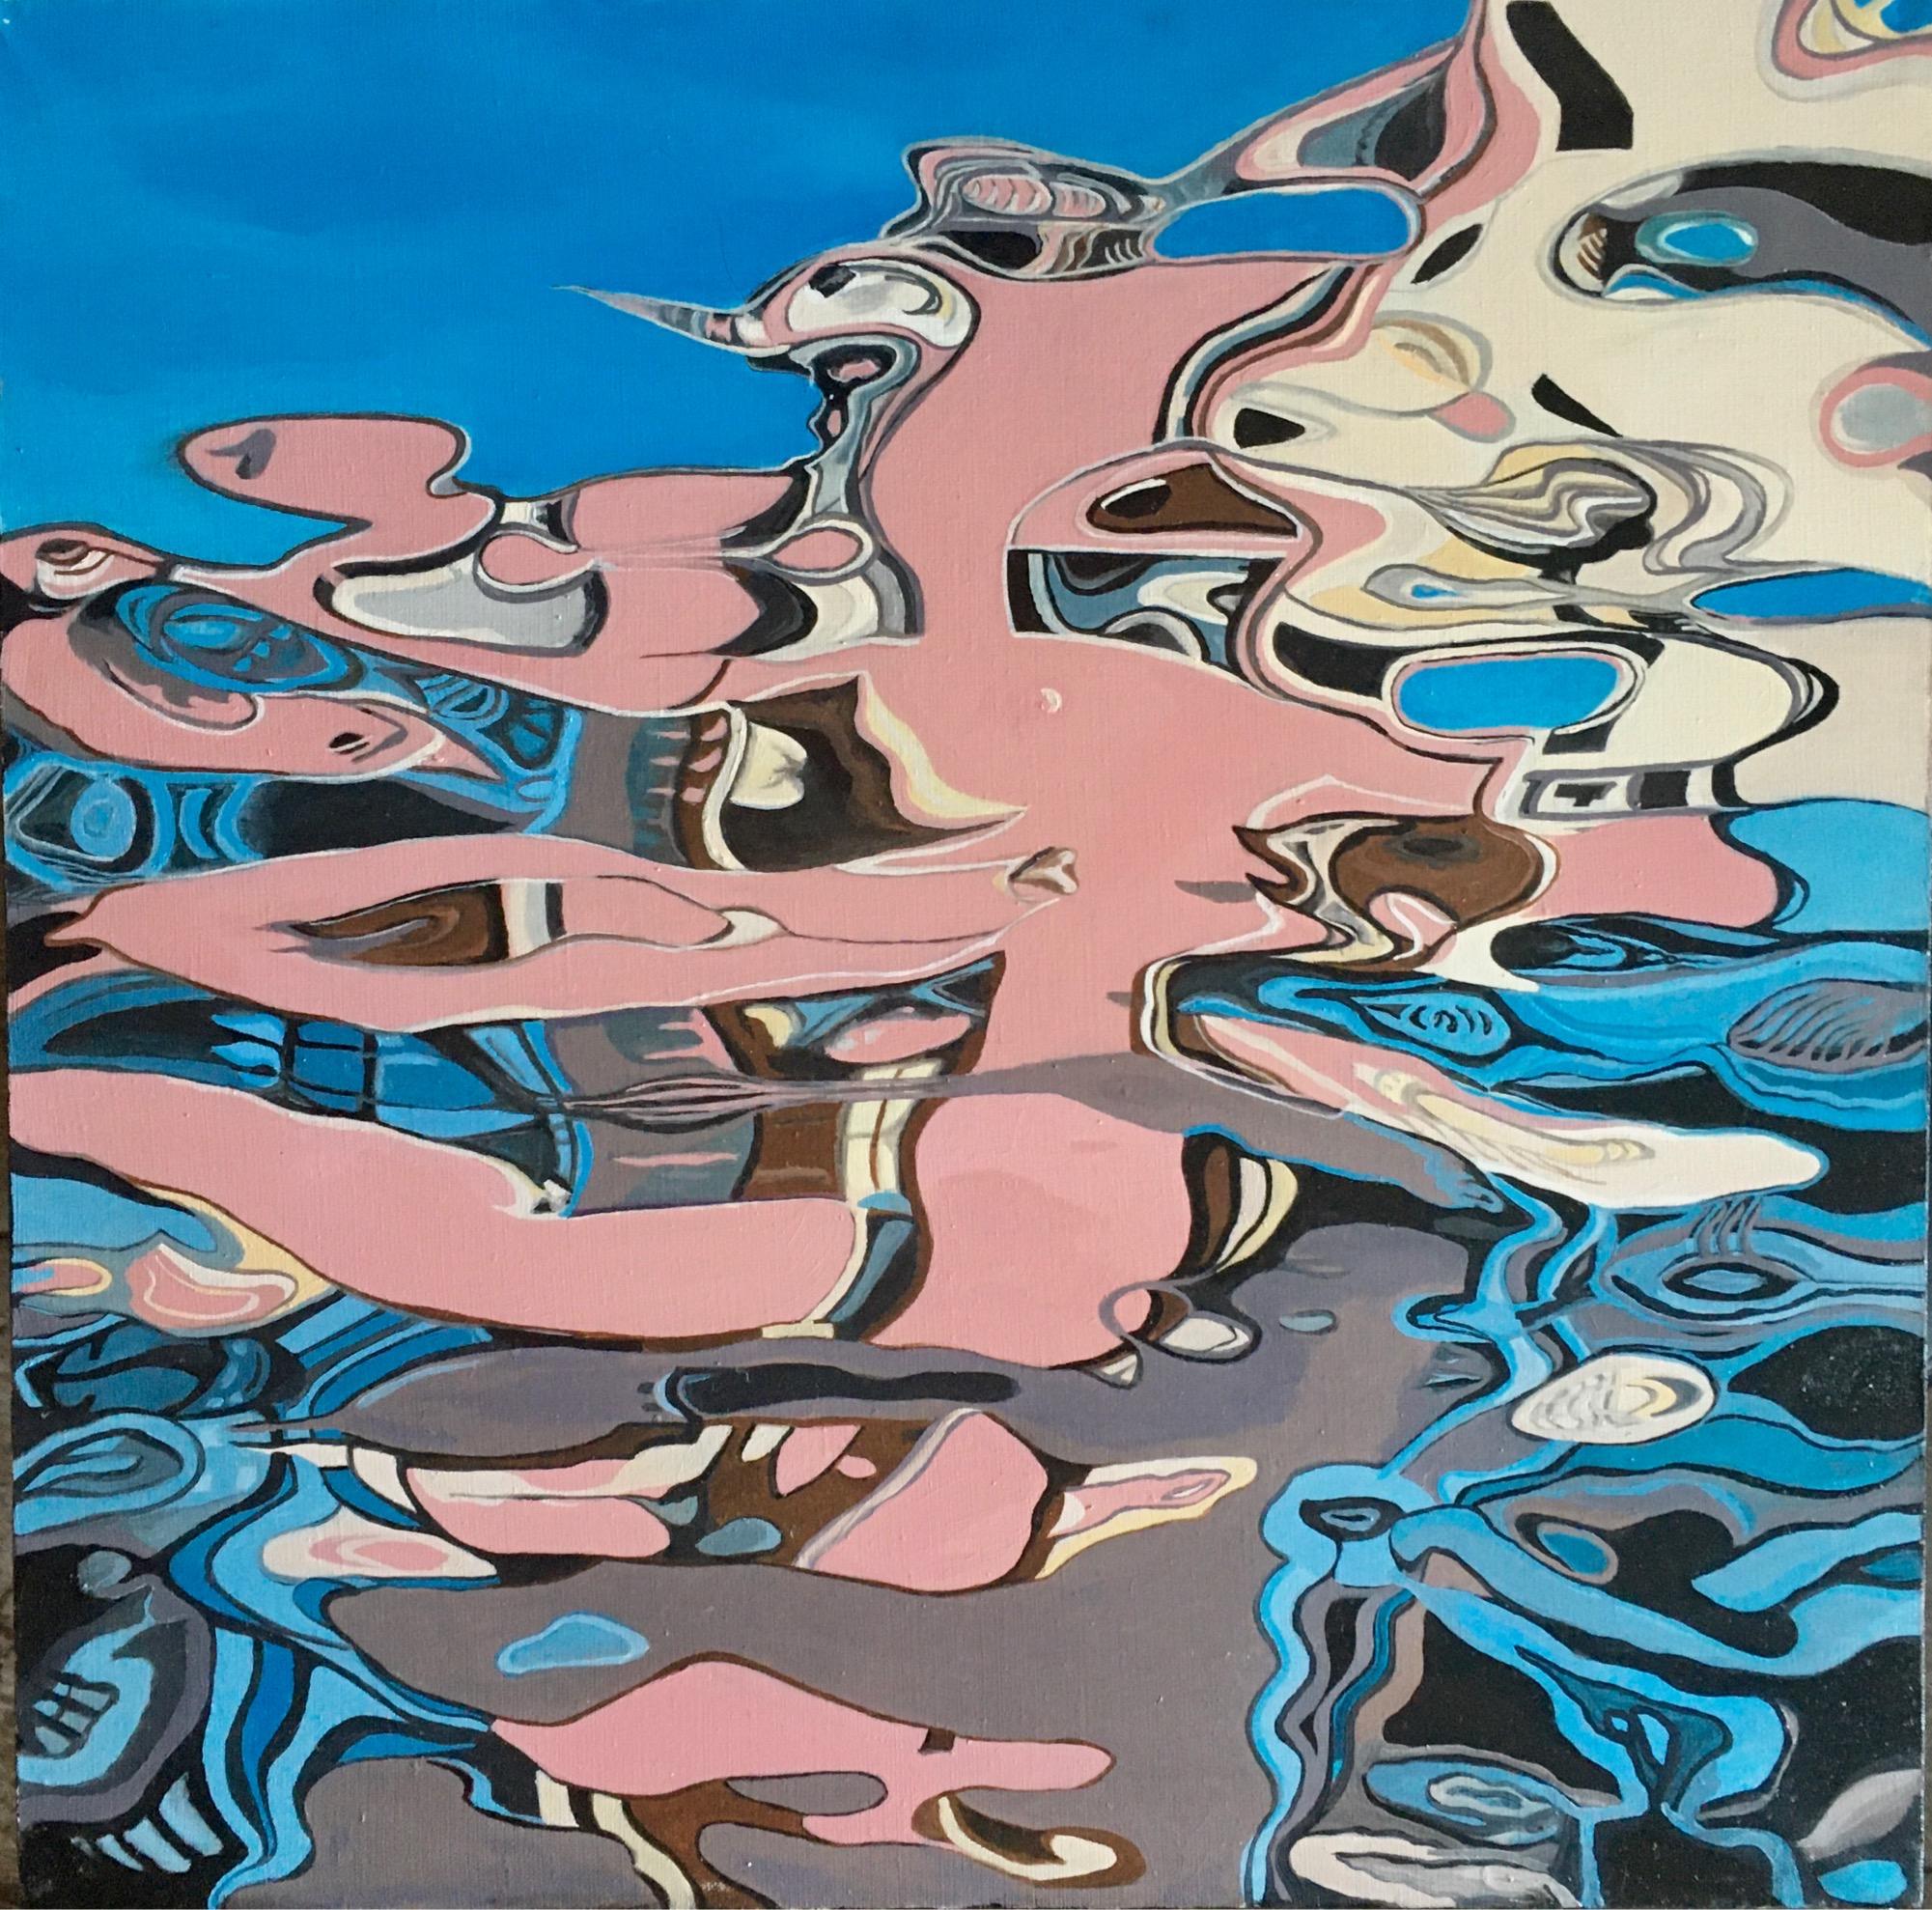 Galin R Landscape Painting – Reflection II-abstraktes Gemälde, in Himmelblau, Rosa, Beige, Grau und Grautönen gemalt